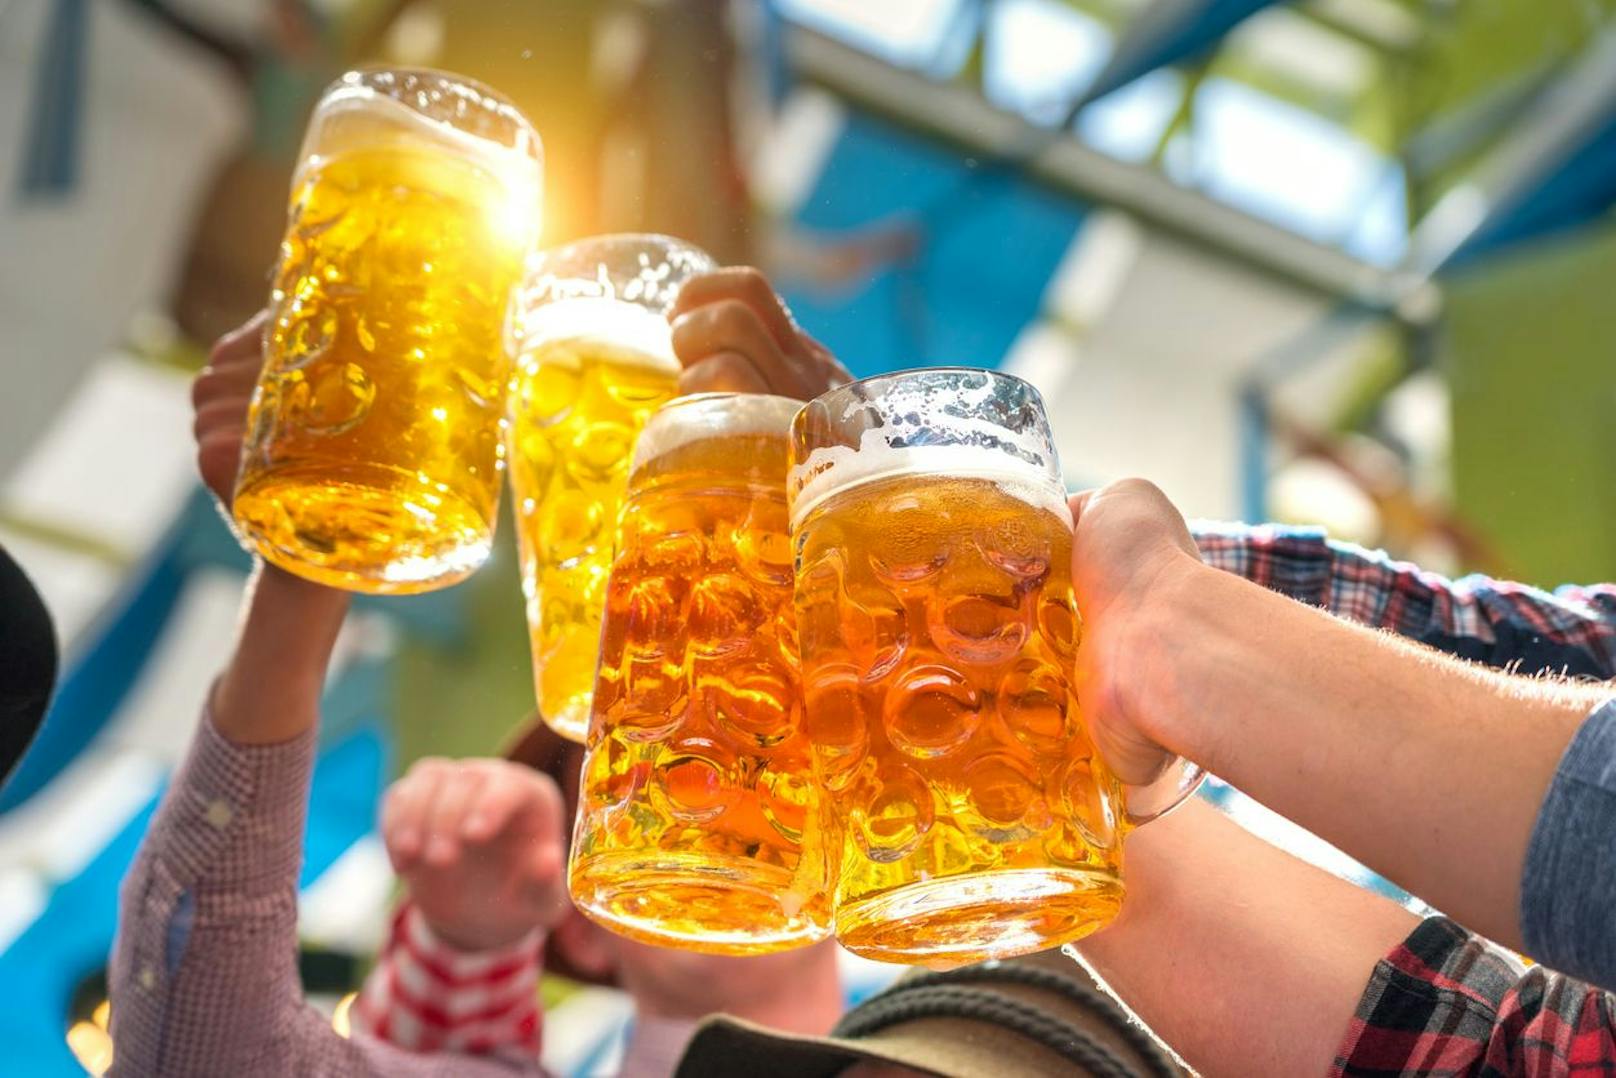 Der Bierkonsum ist in Österreich im ersten Halbjahr im Vergleich zum Vorjahr zurückgegangen. (Symbolbild)